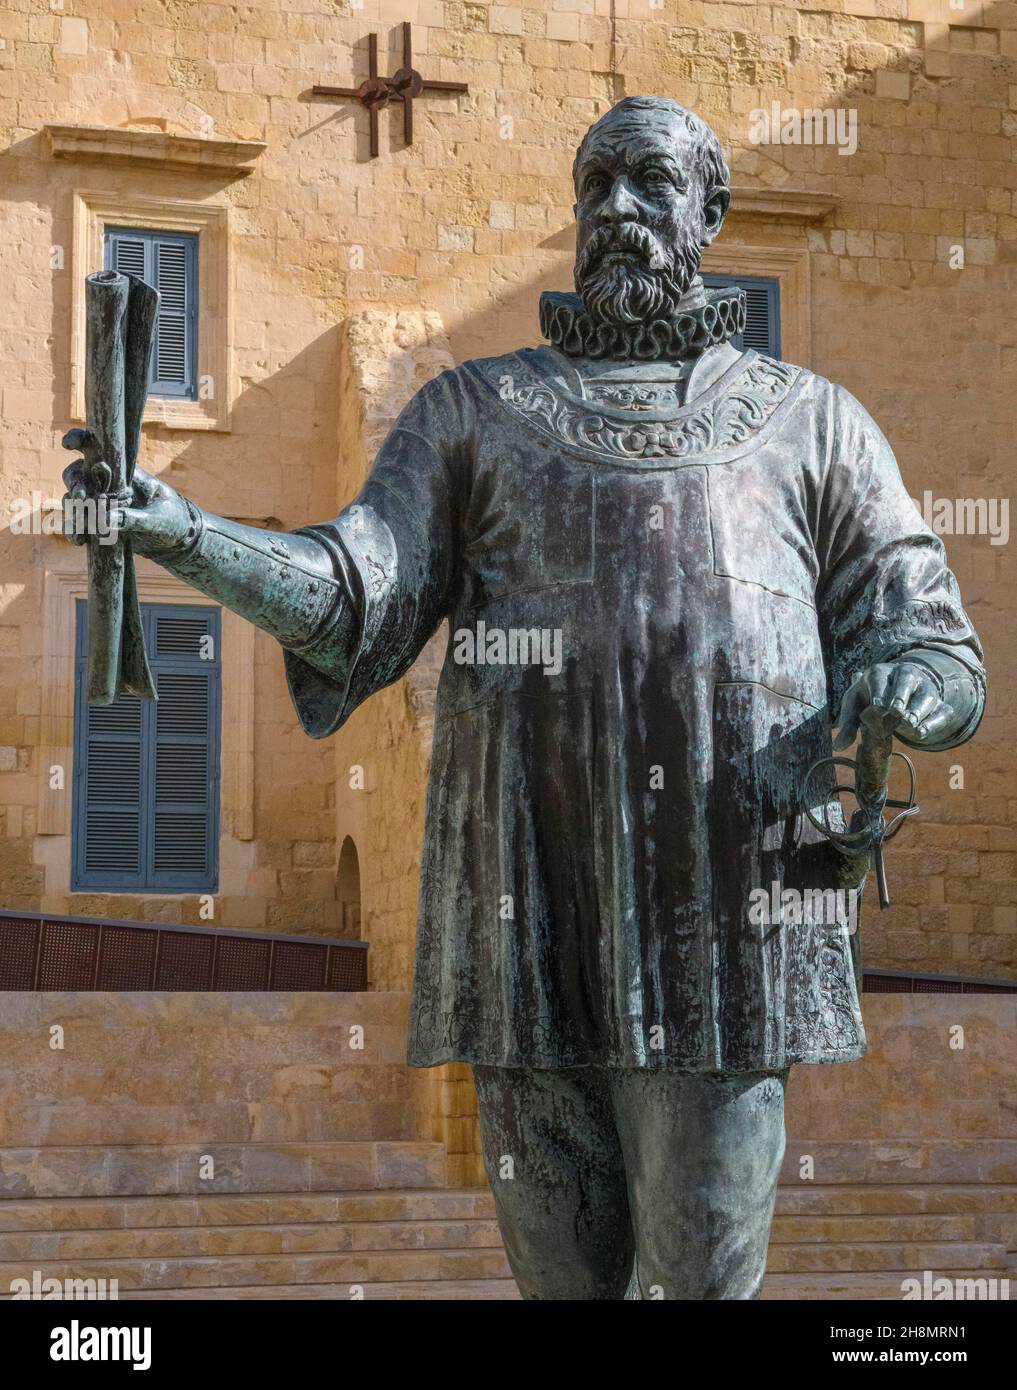 Gros plan de la statue en bronze de Jean Parisot de la Valette, Grand Maître de l'ordre de Malte, fondateur de la Valette capitale de Malte, la Valette, Malte Banque D'Images